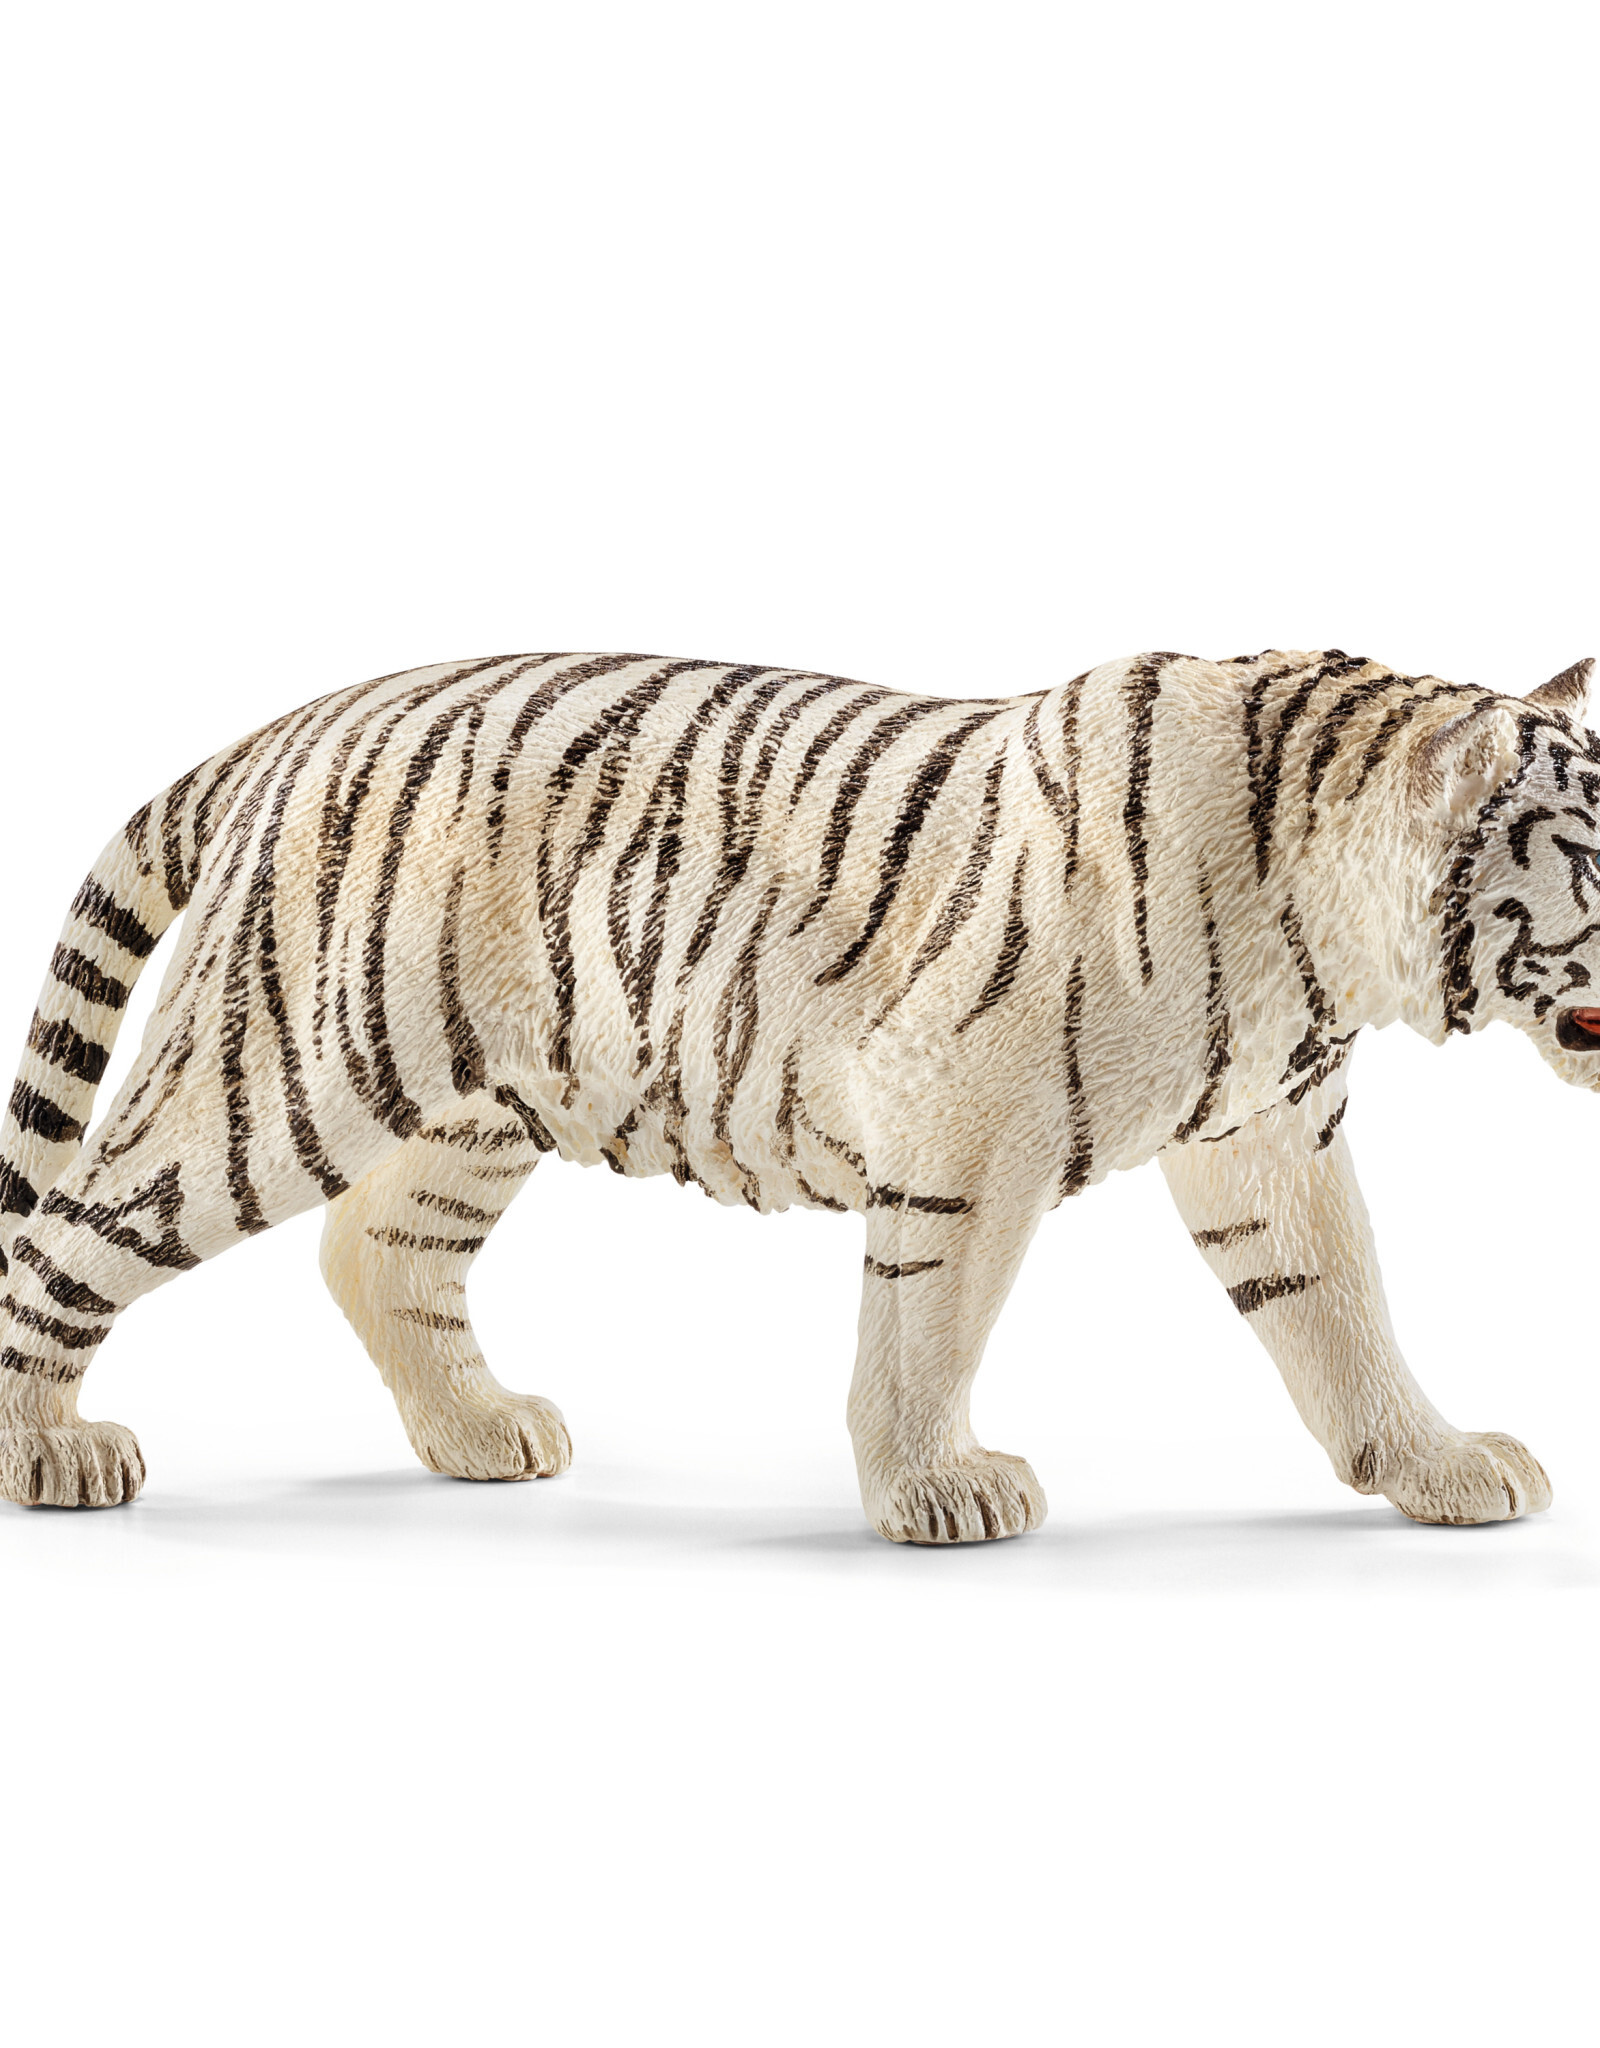 SCHLEICH Tiger, white